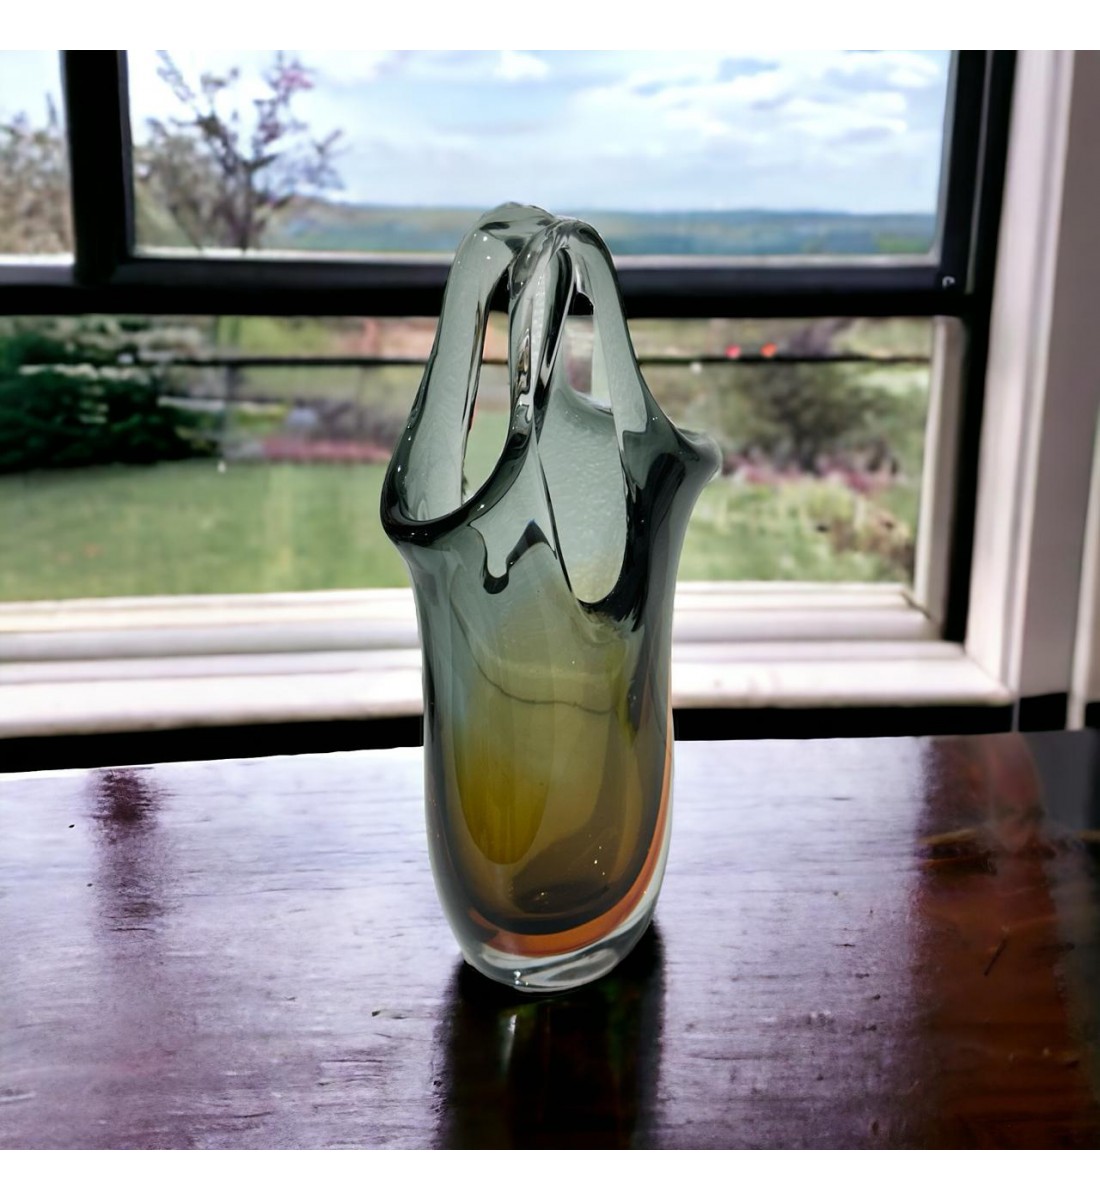 مزهرية زجاج عضوية من كوبي - 35×18×8سم 